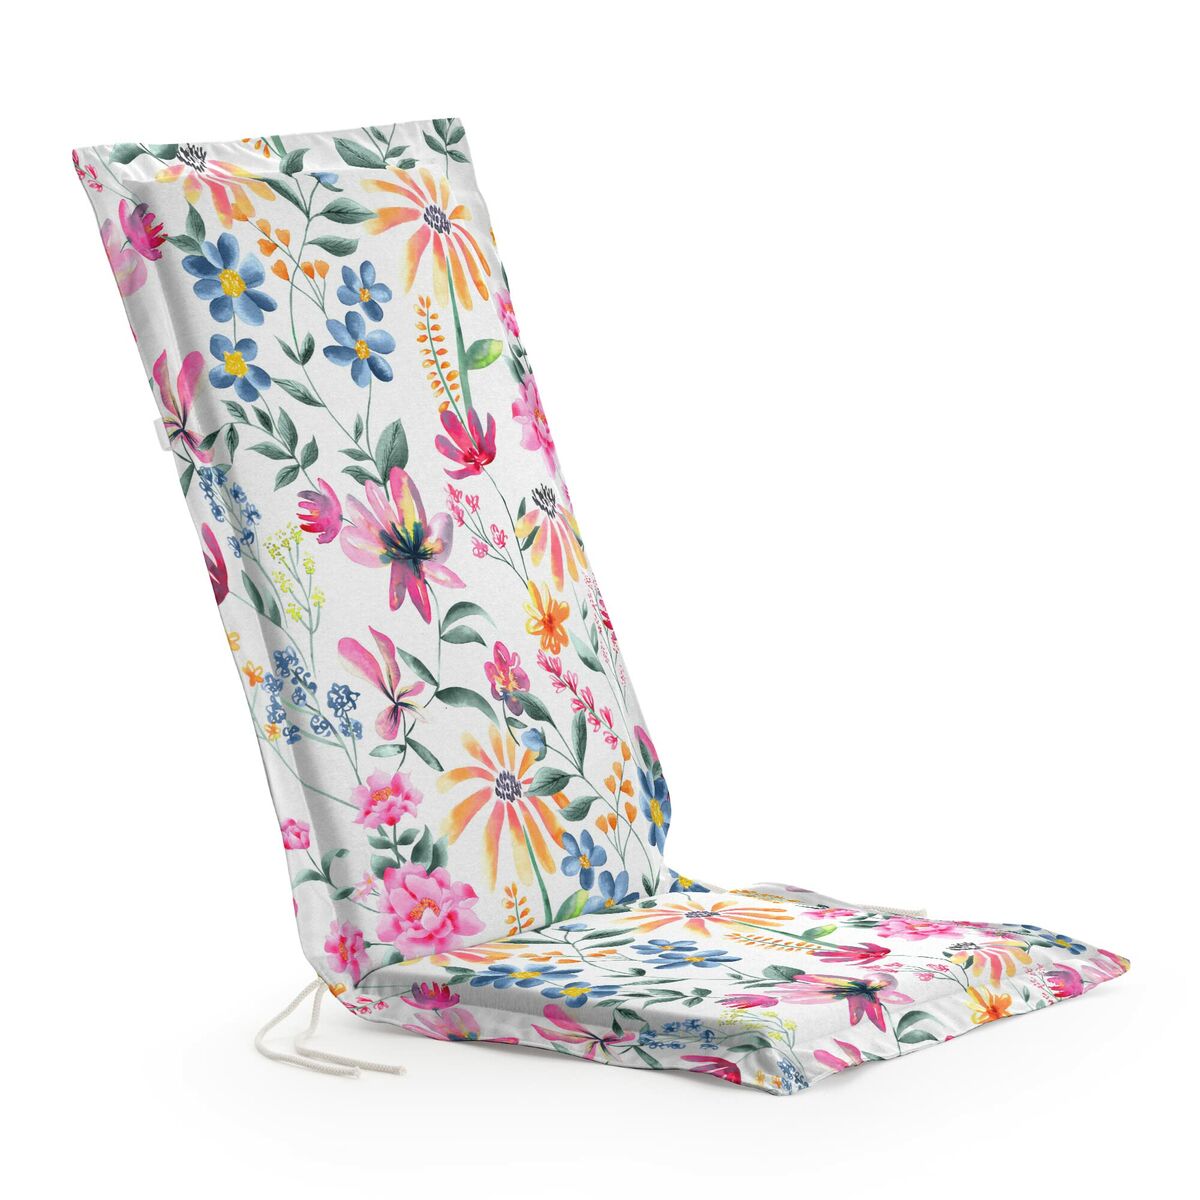 Belum Chair Cushion 0120-407 multilileur 53 x 4 x 101 cm